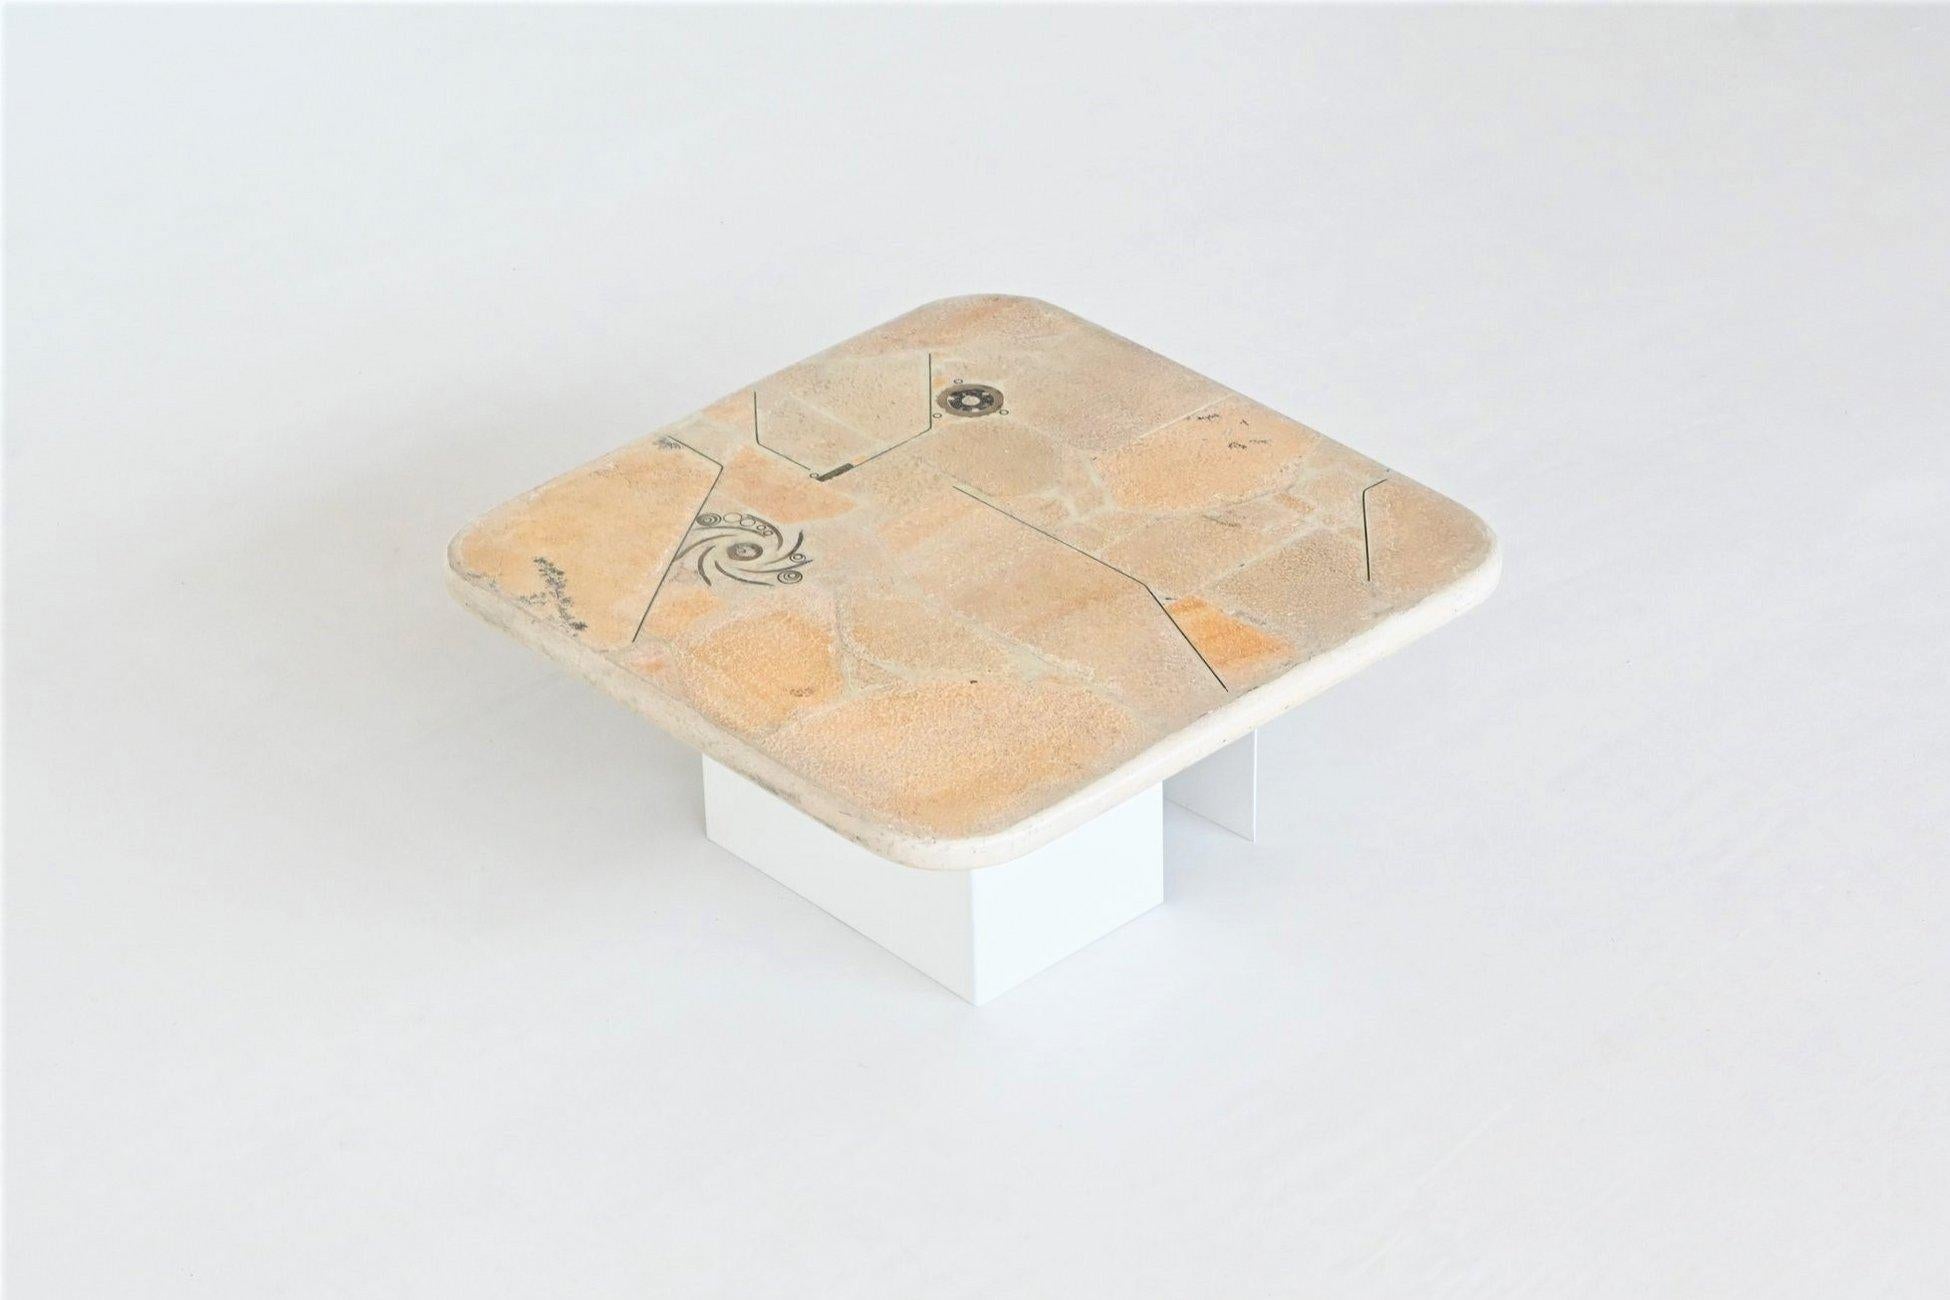 Magnifique table basse de forme carrée conçue et fabriquée par Marcus Kingma, Pays-Bas 1992. Le lourd plateau en béton blanc repose sur une base de deux socles en métal laqué blanc cassé qui peuvent être placés dans plusieurs positions. Une belle